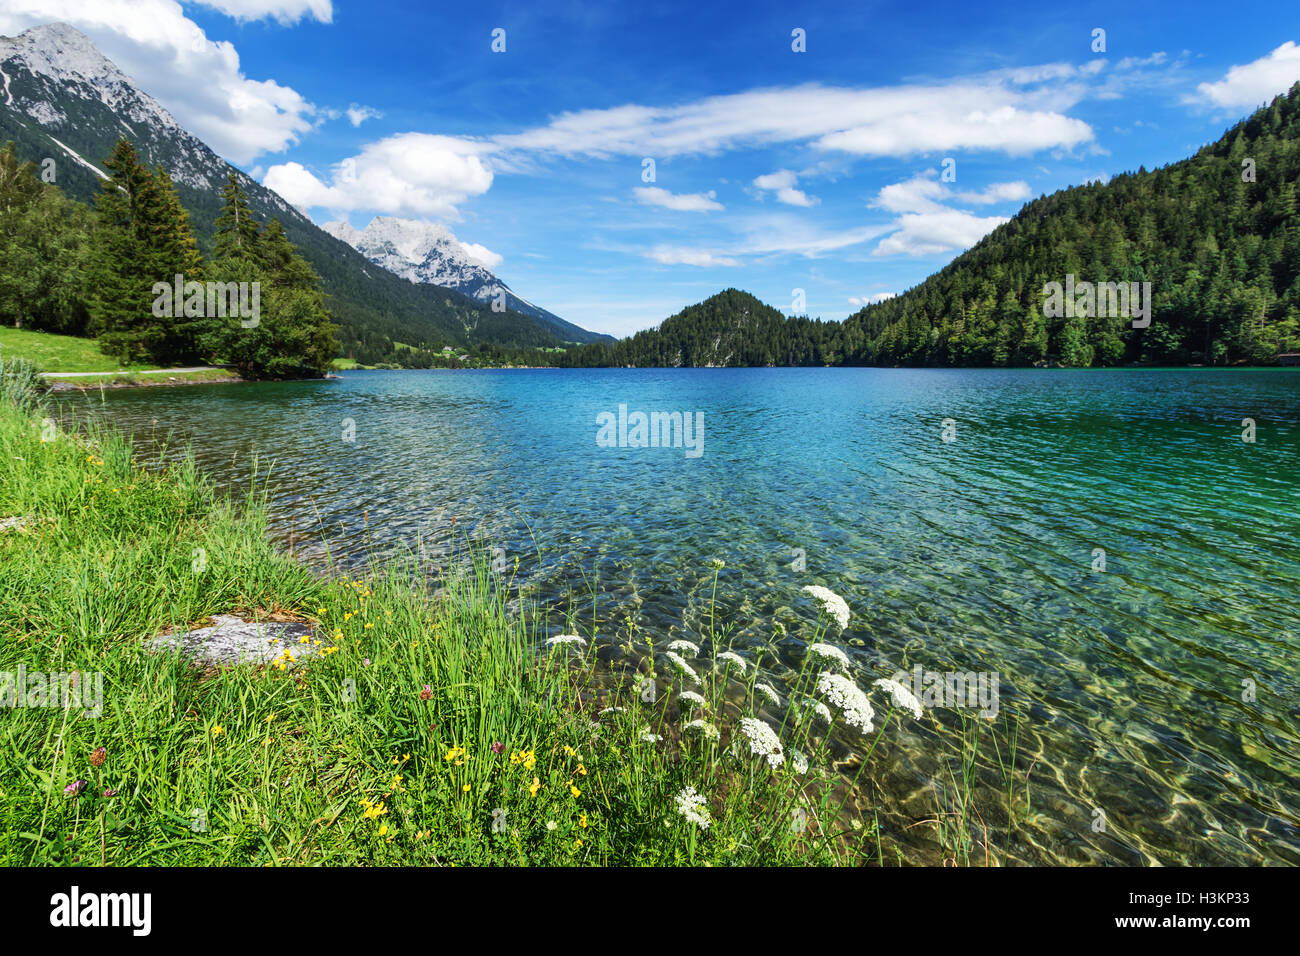 Vue idyllique de Mountain Lake. Lac Hintersteiner, Tyrol, Autriche. Banque D'Images